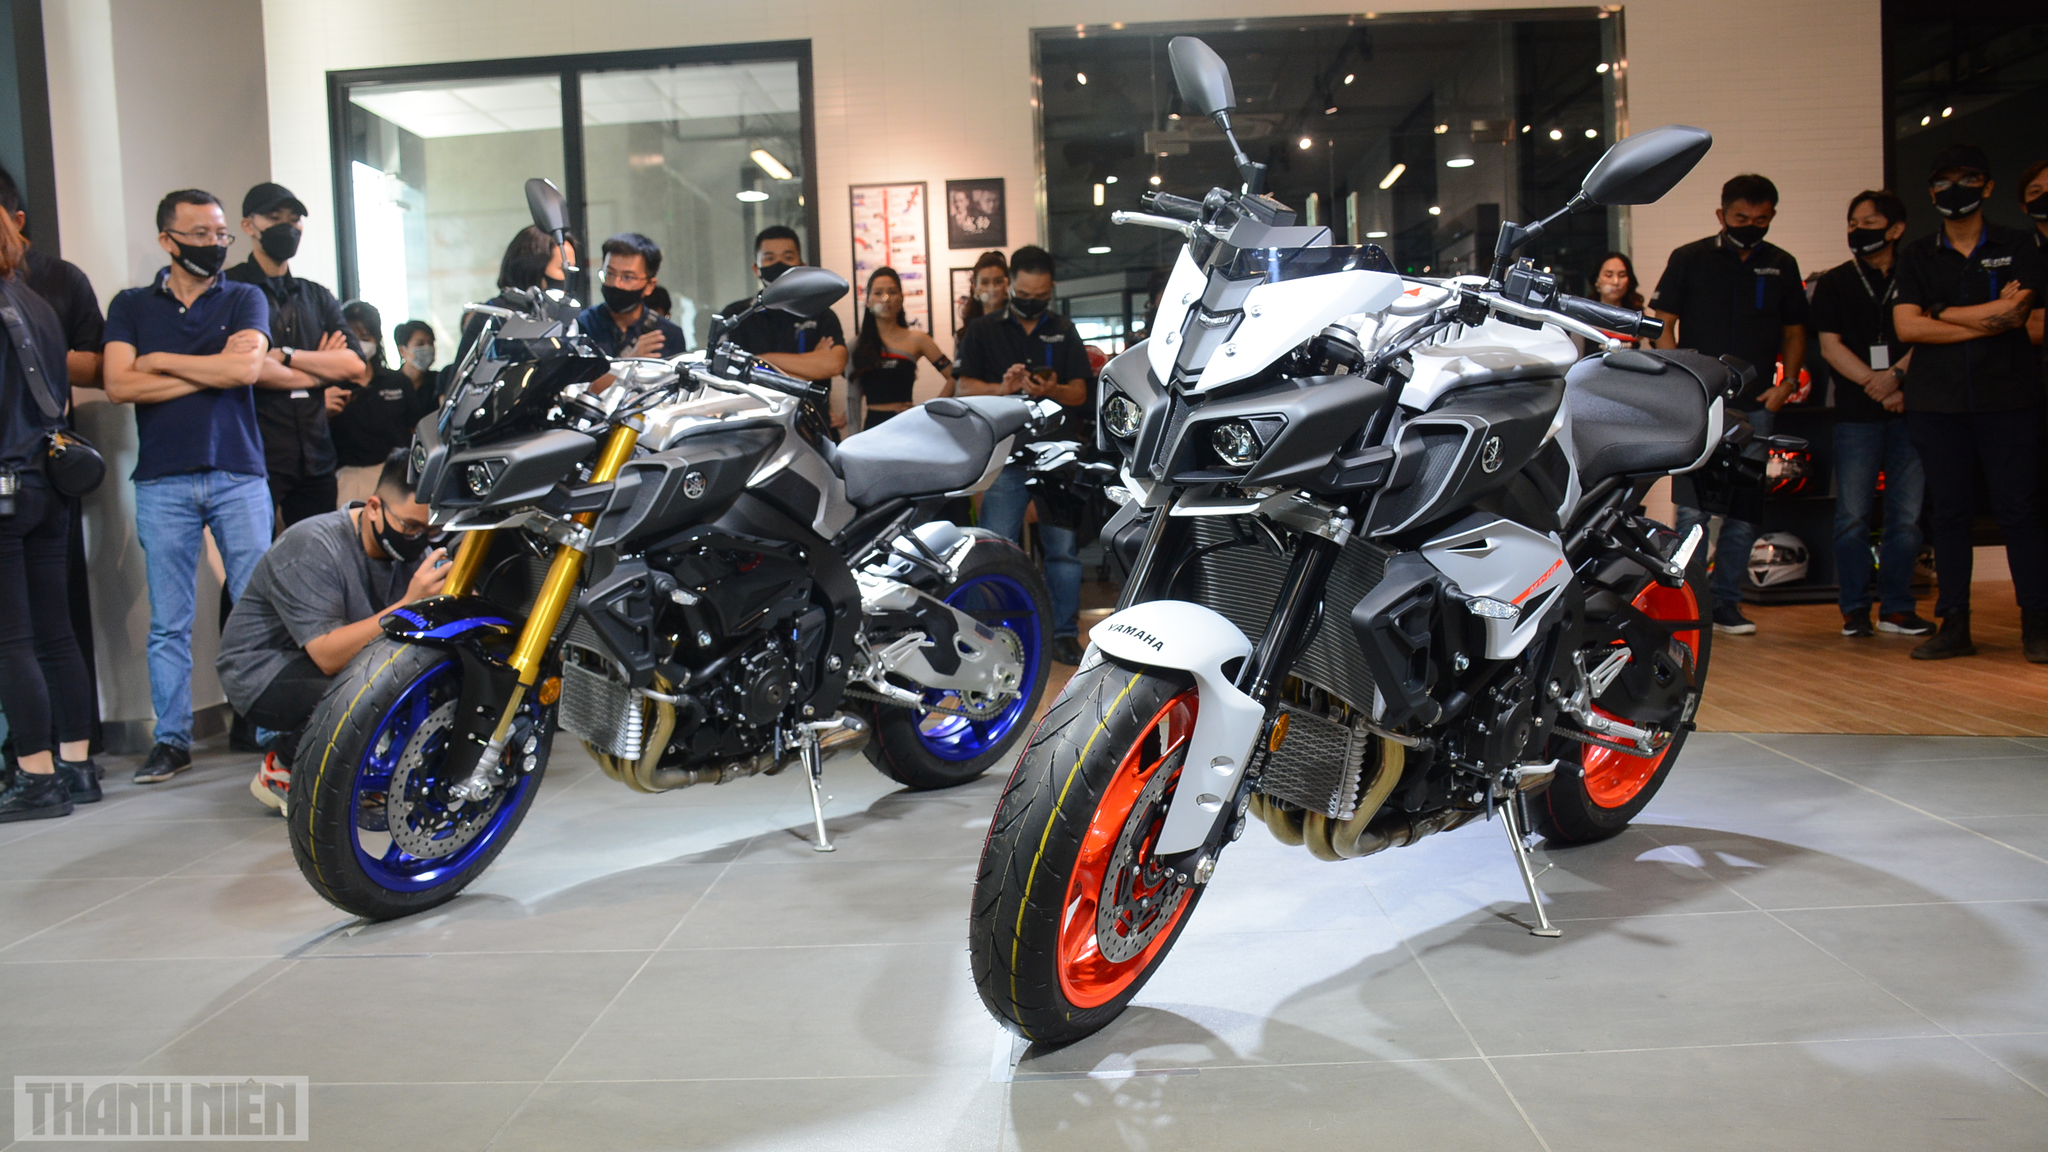 Yamaha официально присоединилась к соревнованиям в сегменте мотоциклов большого объема во Вьетнаме.